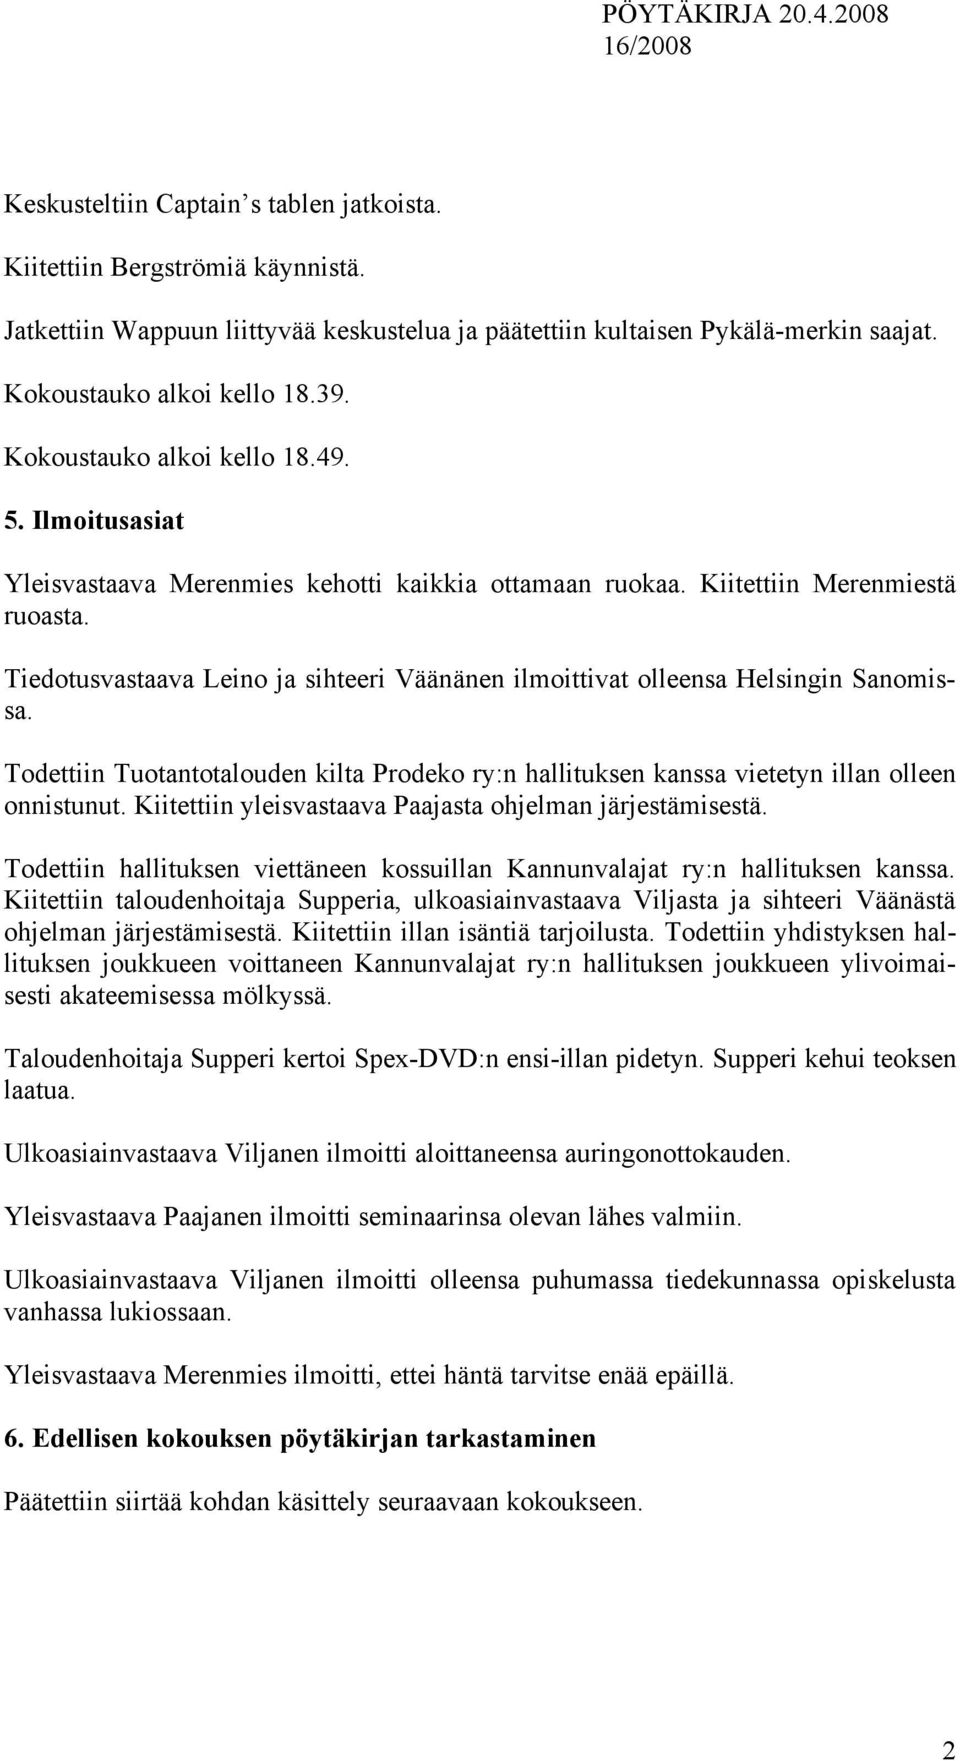 Tiedotusvastaava Leino ja sihteeri Väänänen ilmoittivat olleensa Helsingin Sanomissa. Todettiin Tuotantotalouden kilta Prodeko ry:n hallituksen kanssa vietetyn illan olleen onnistunut.